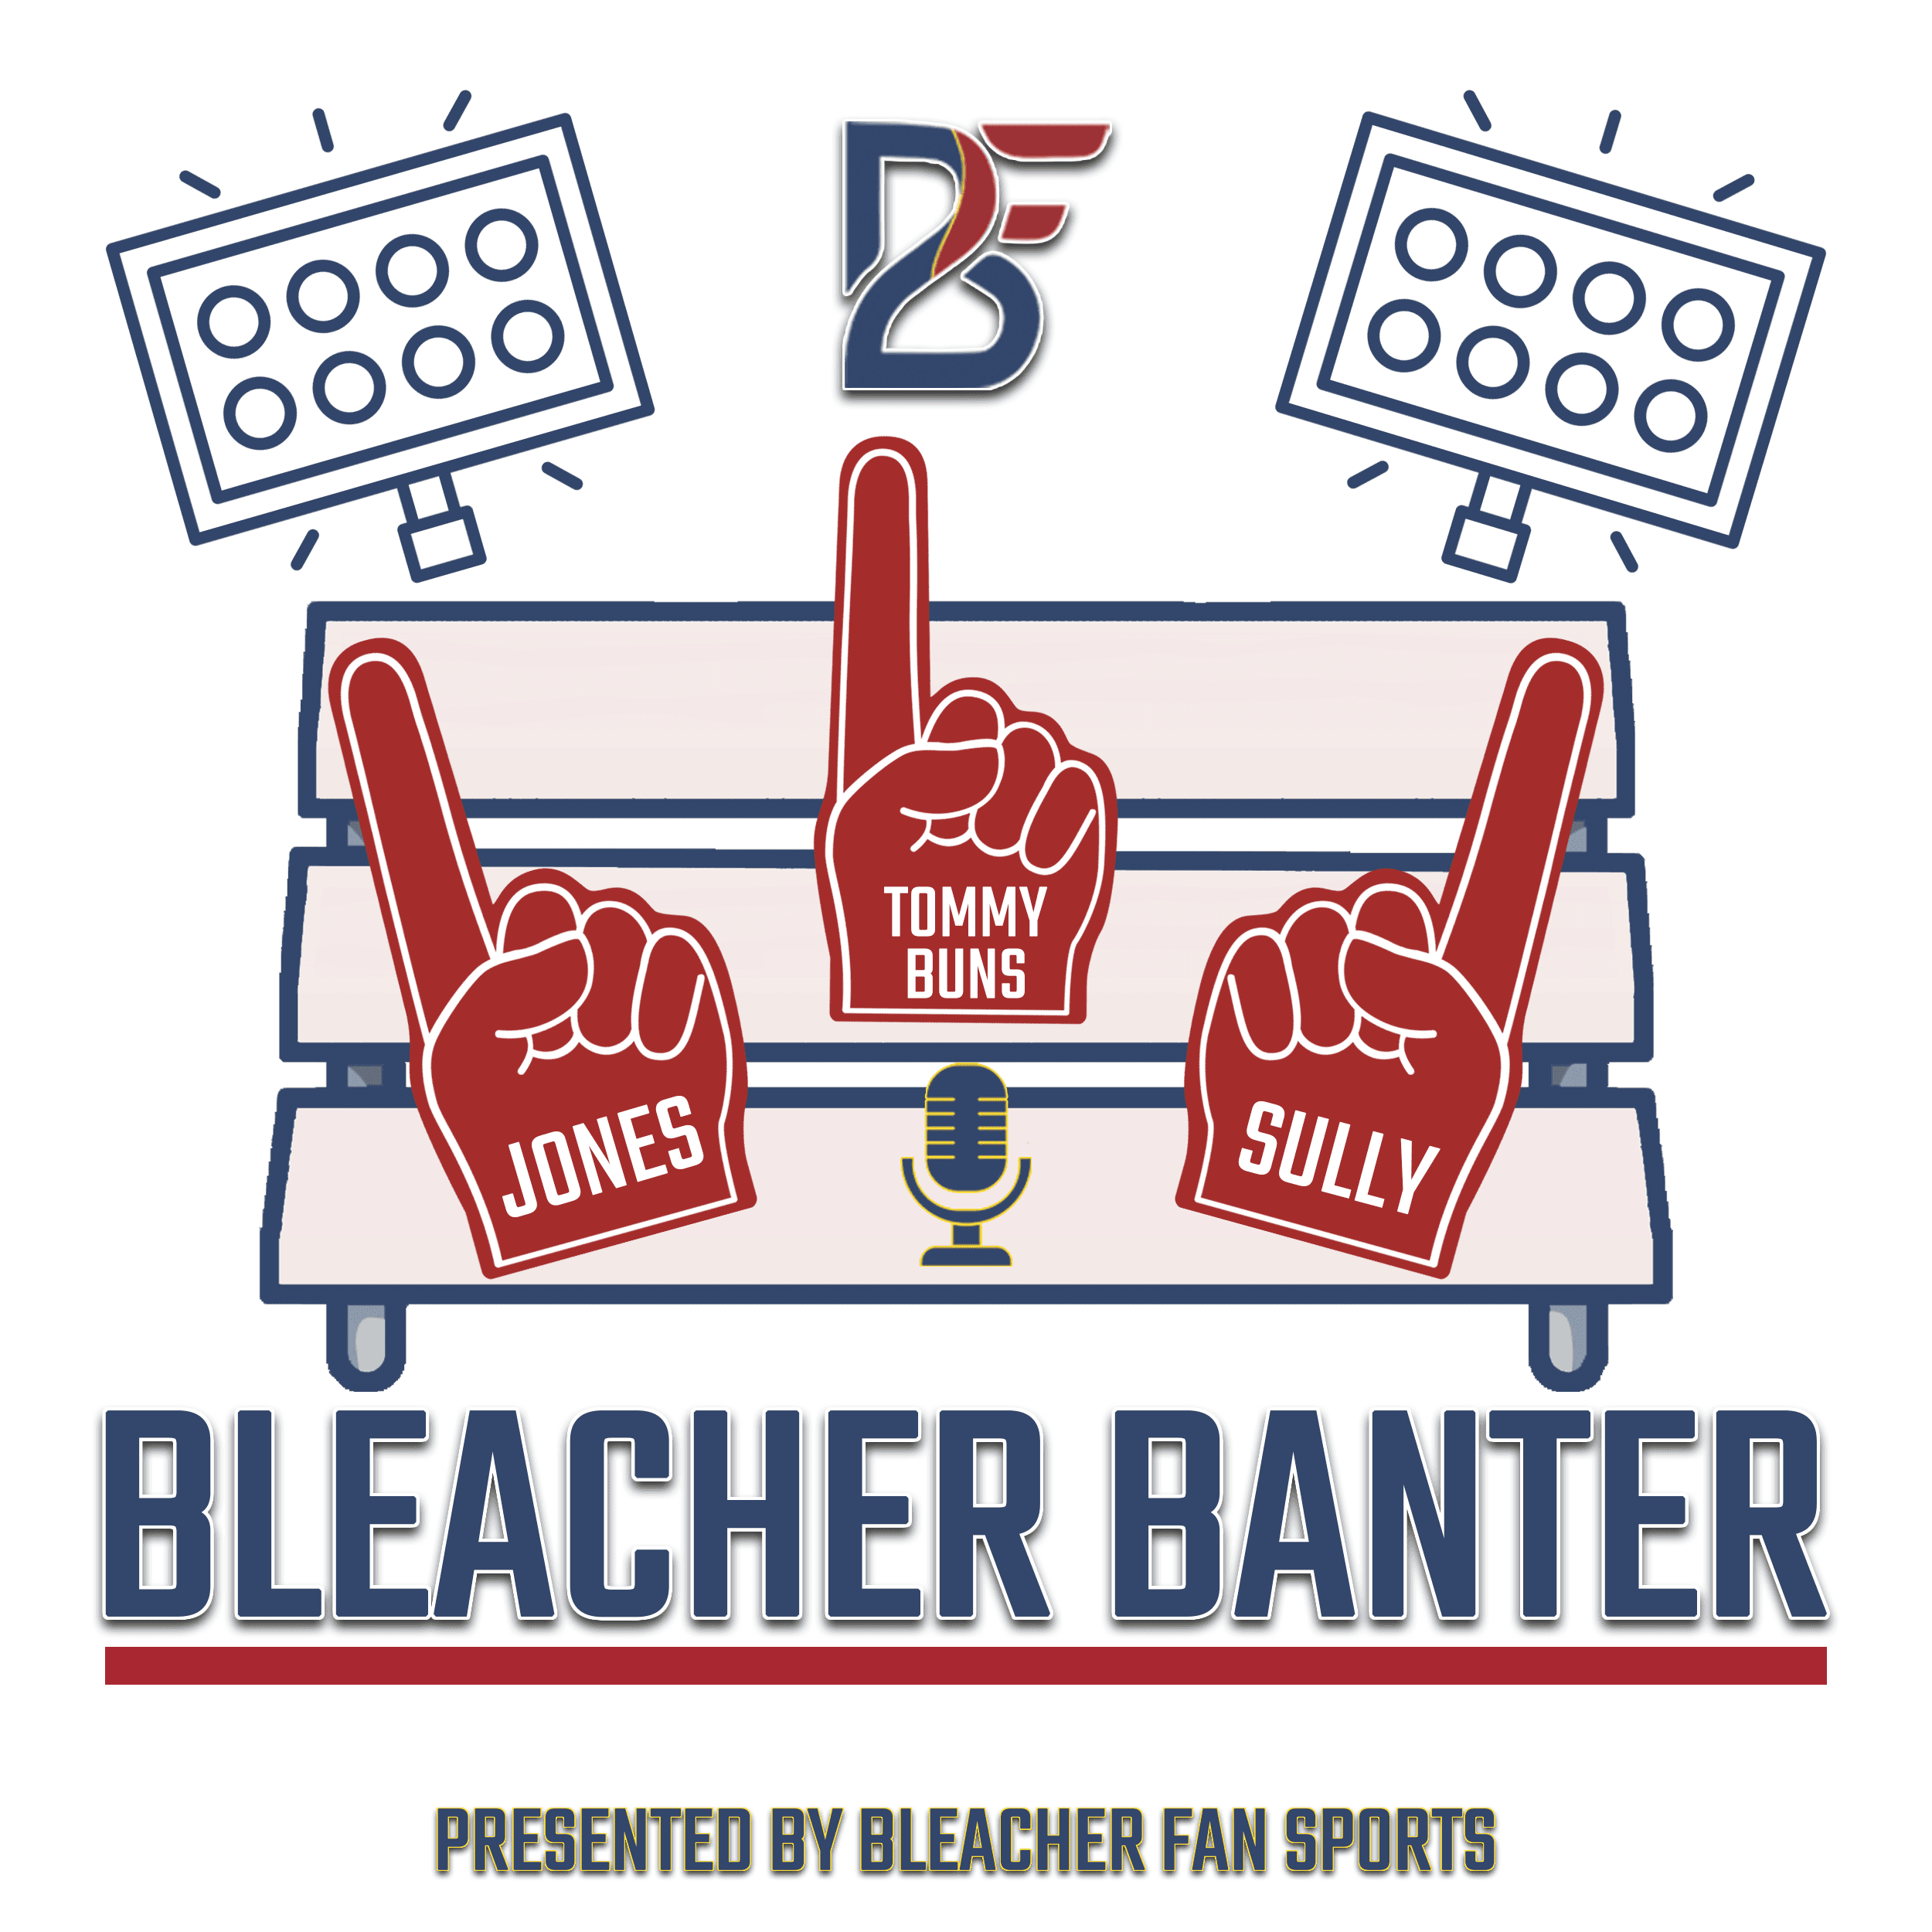 Bleacher Banter – Presented By Bleacher Fan Sports